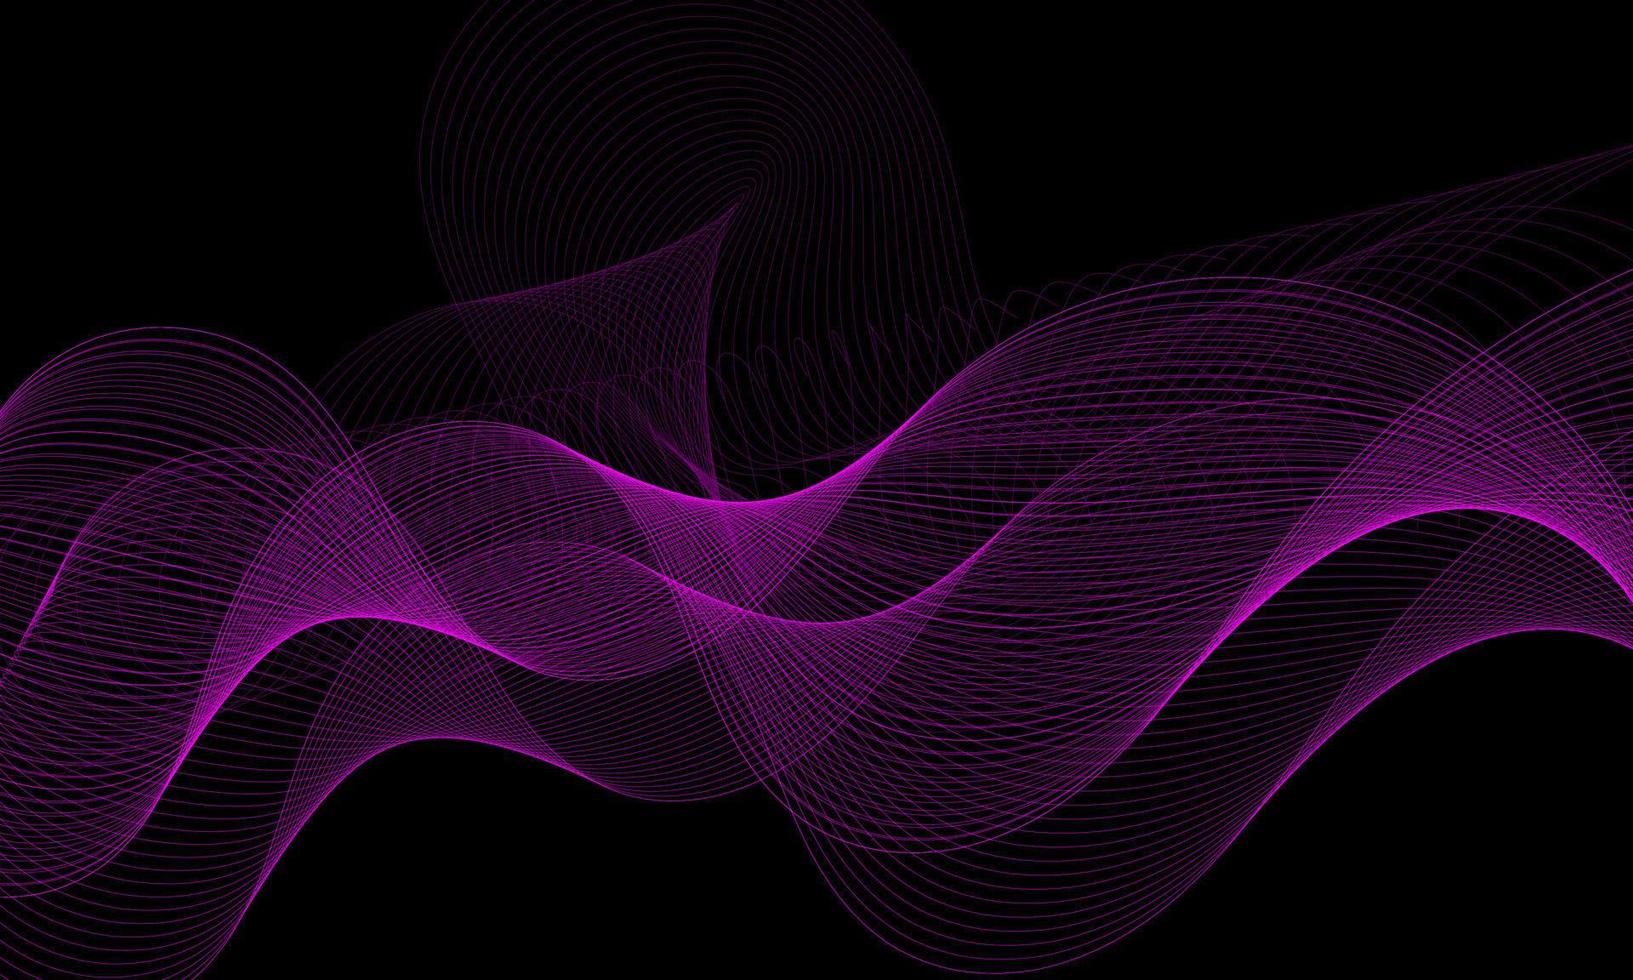 lignes d'onde abstraites lumière violette fluide dynamique isolée sur fond noir. concept de conception d'illustration vectorielle de musique, fête, technologie, moderne. vecteur